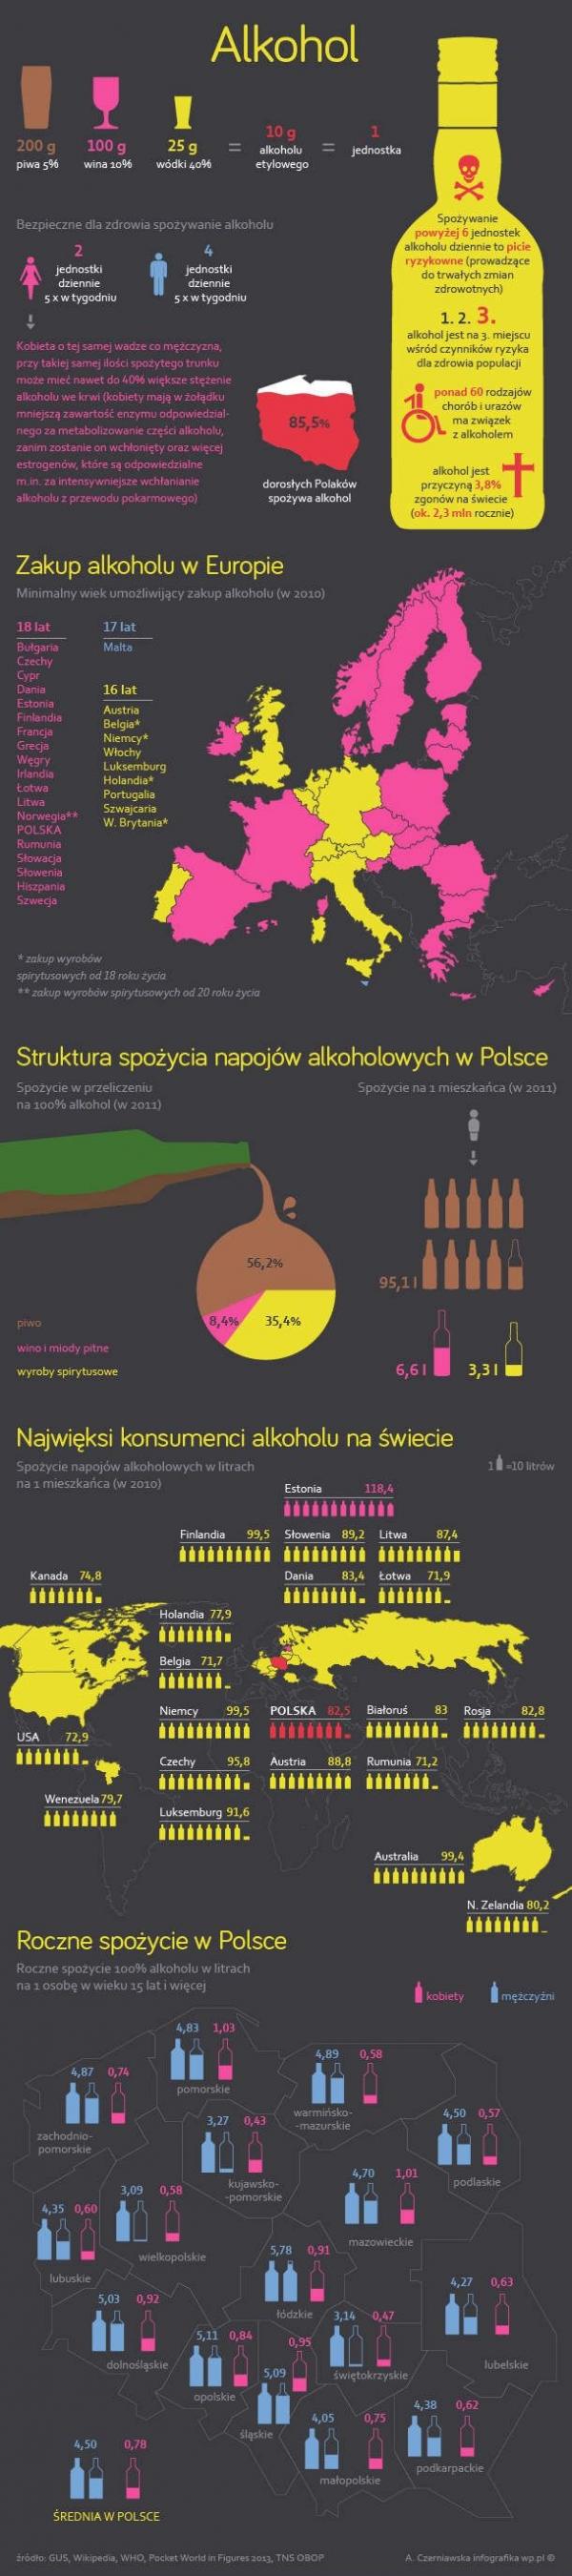 Alkohol w Polsce i na świecie